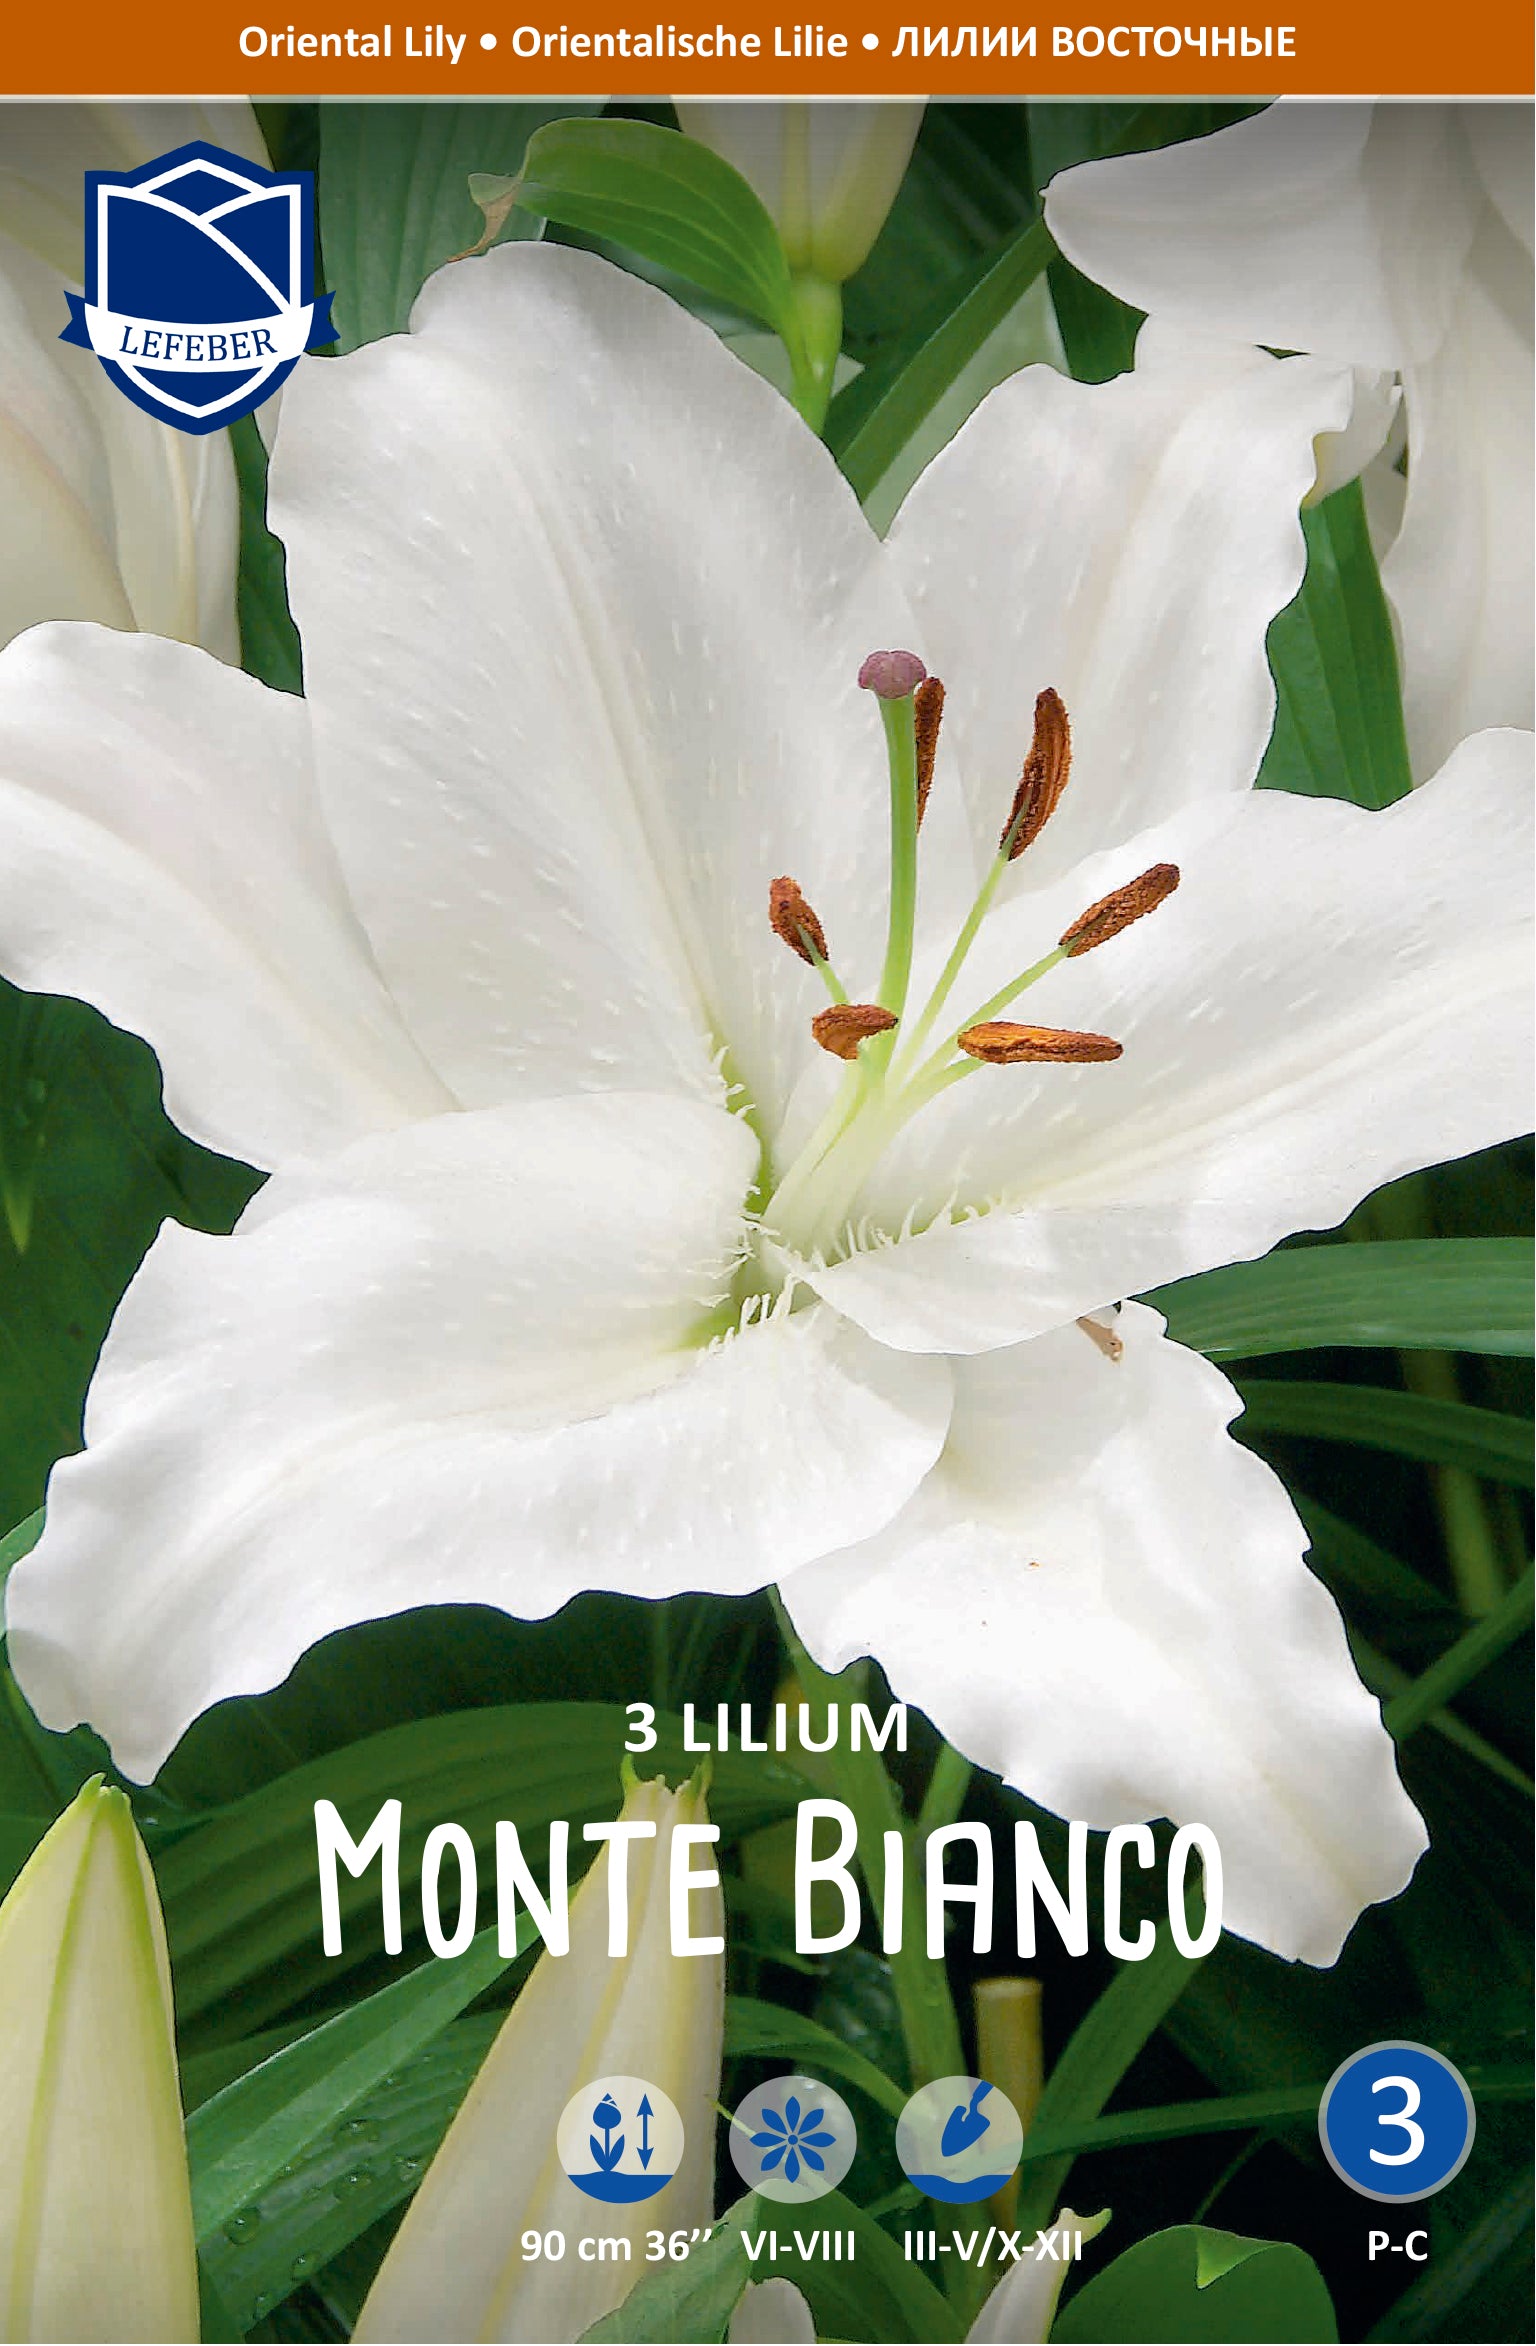 Lilium Monte Bianco